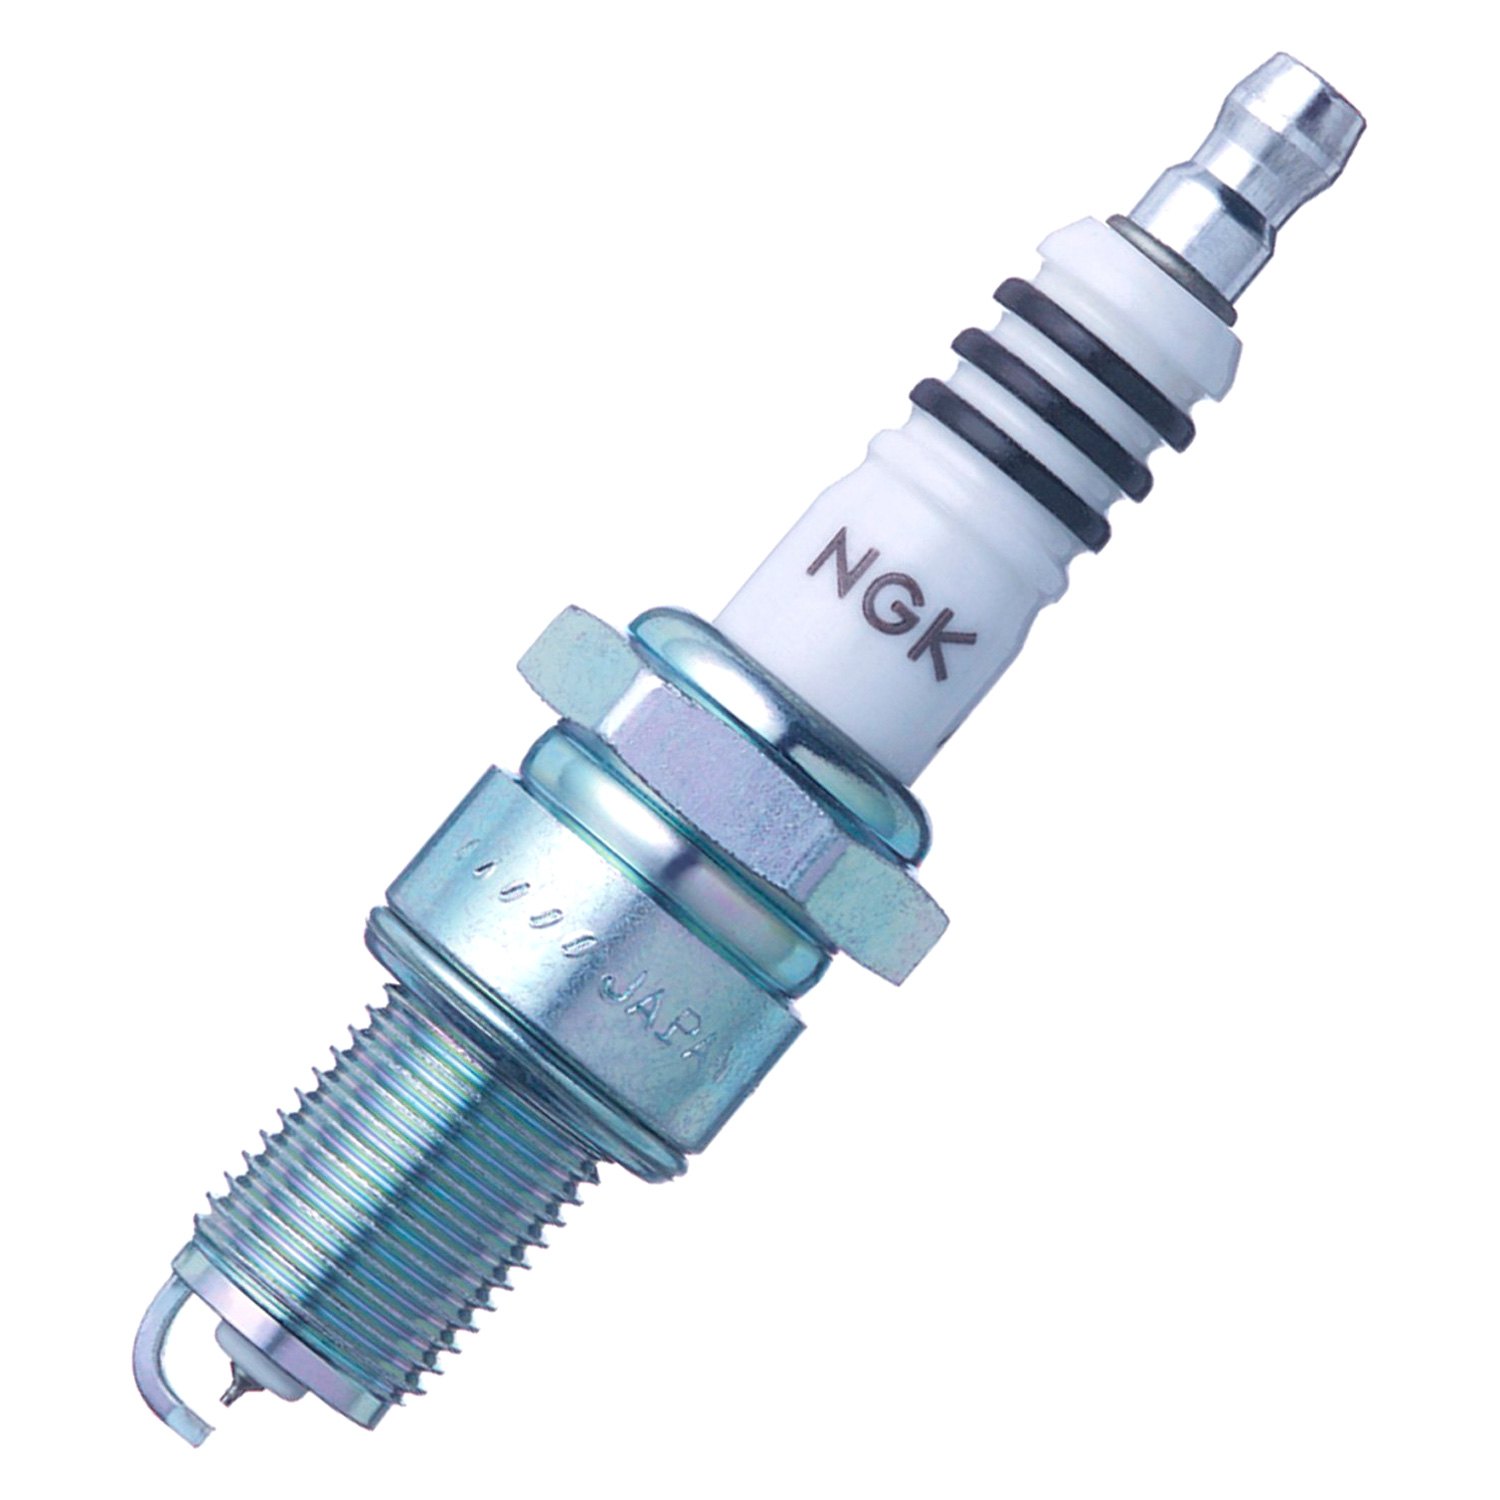 ngk-6597-iridium-ix-spark-plug